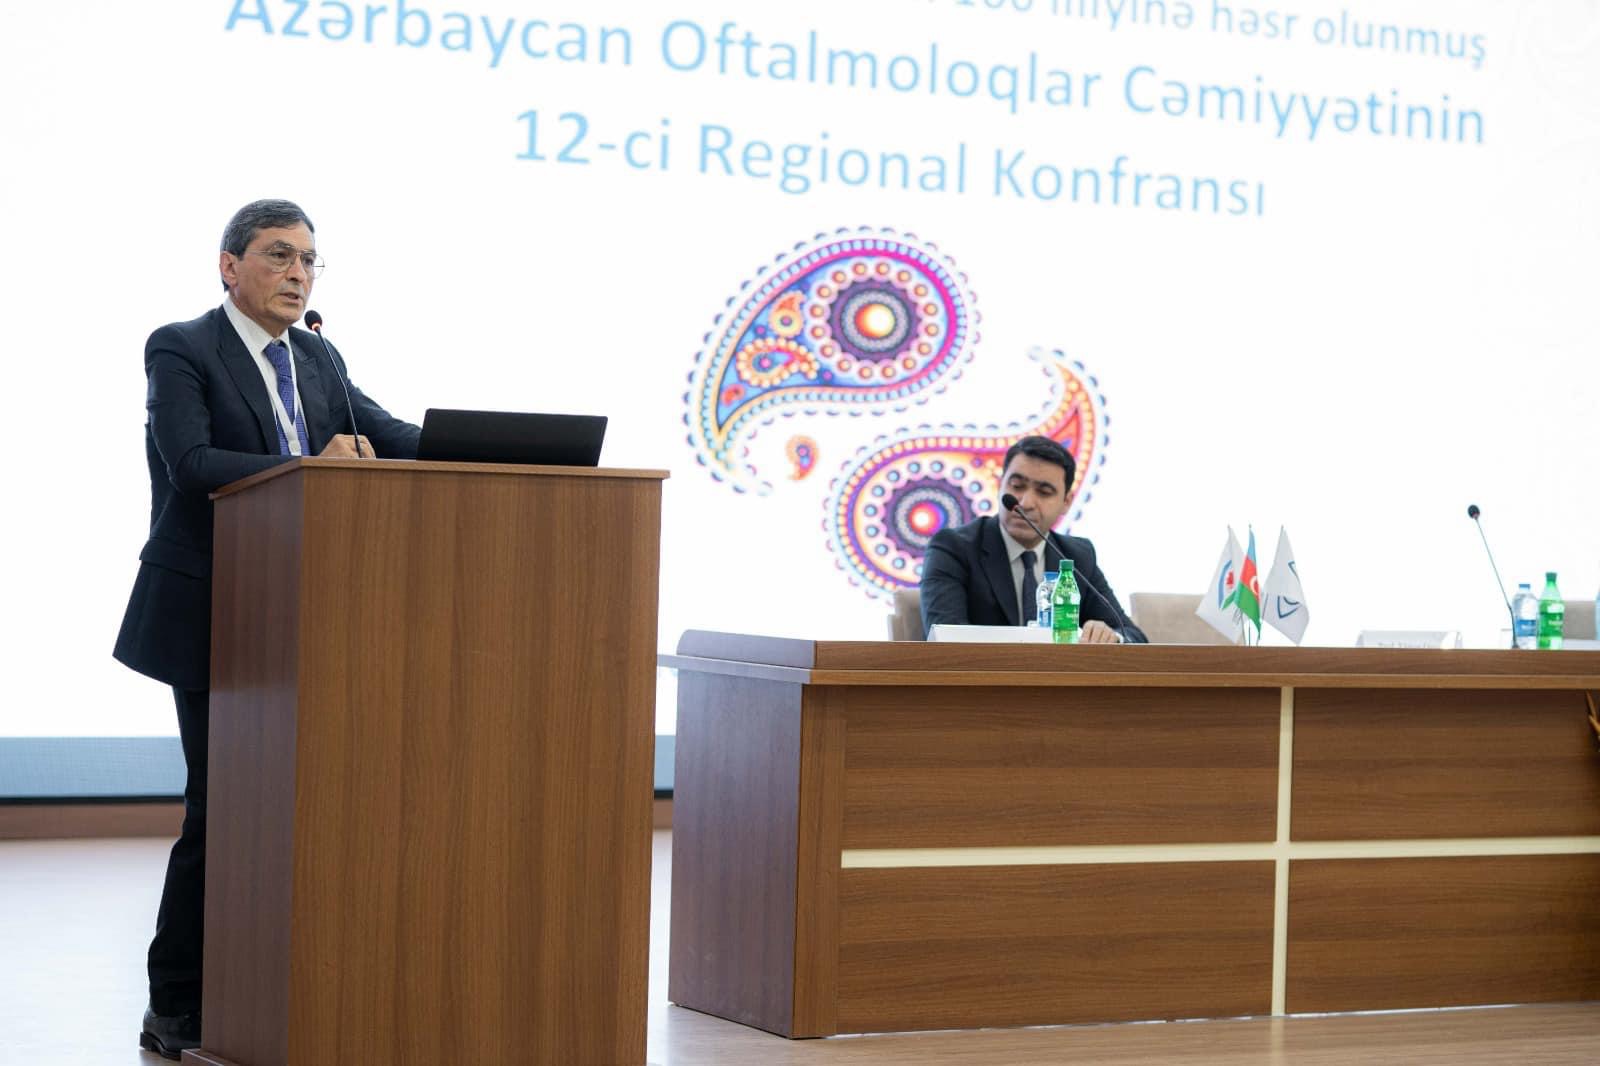 Azərbaycan Oftalmoloqlar Cəmiyyətinin Xll Regional Konfransı keçirilib